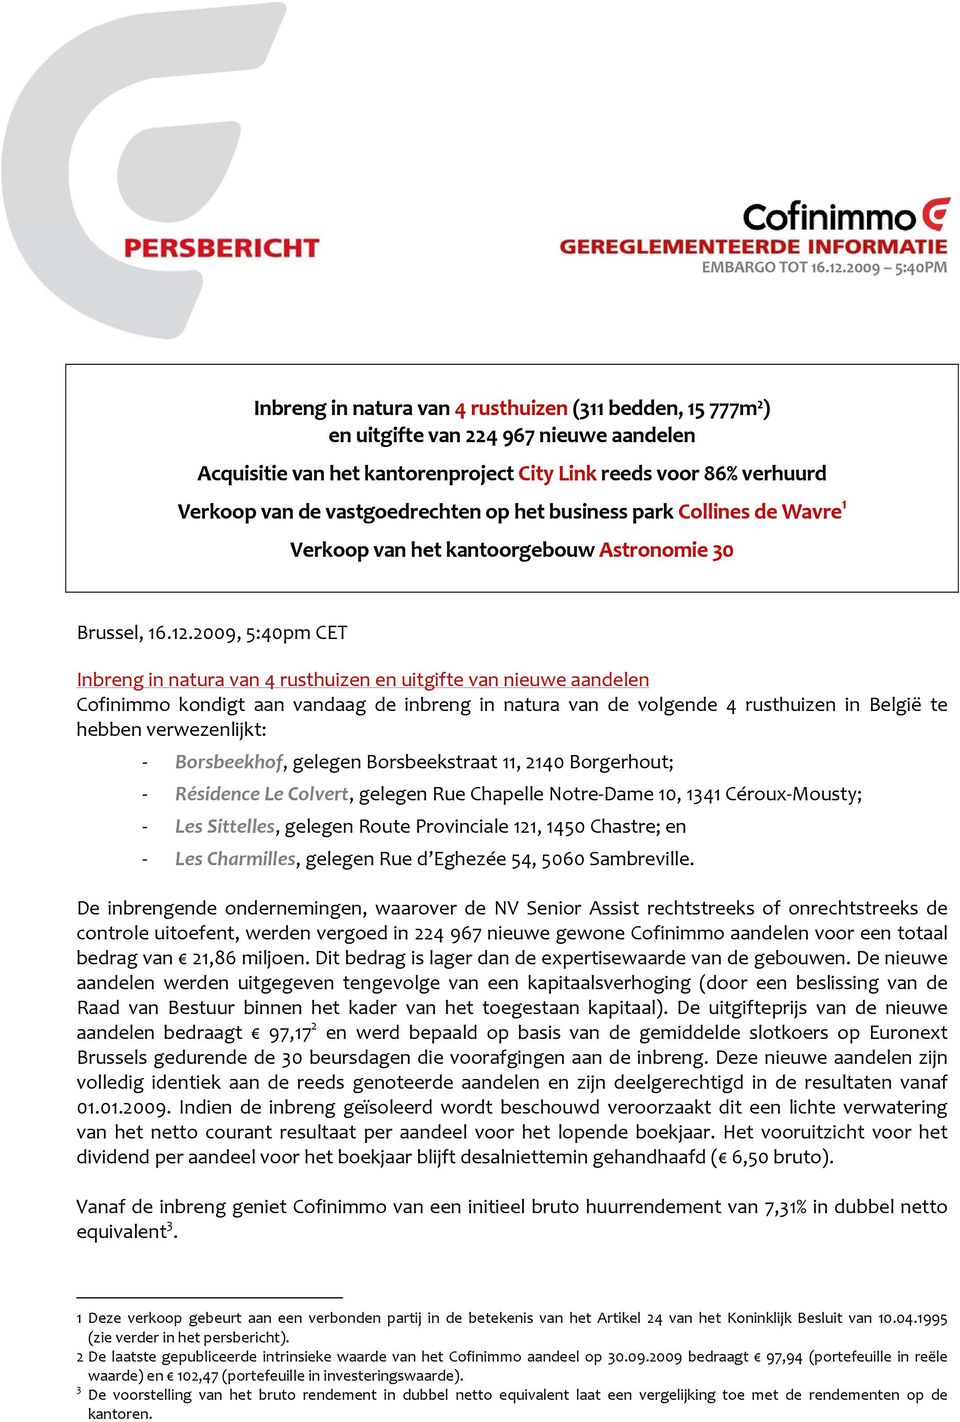 2009, 5:40pm CET Inbreng in natura van 4 rusthuizen en uitgifte van nieuwe aandelen Cofinimmo kondigt aan vandaag de inbreng in natura van de volgende 4 rusthuizen in België te hebben verwezenlijkt: